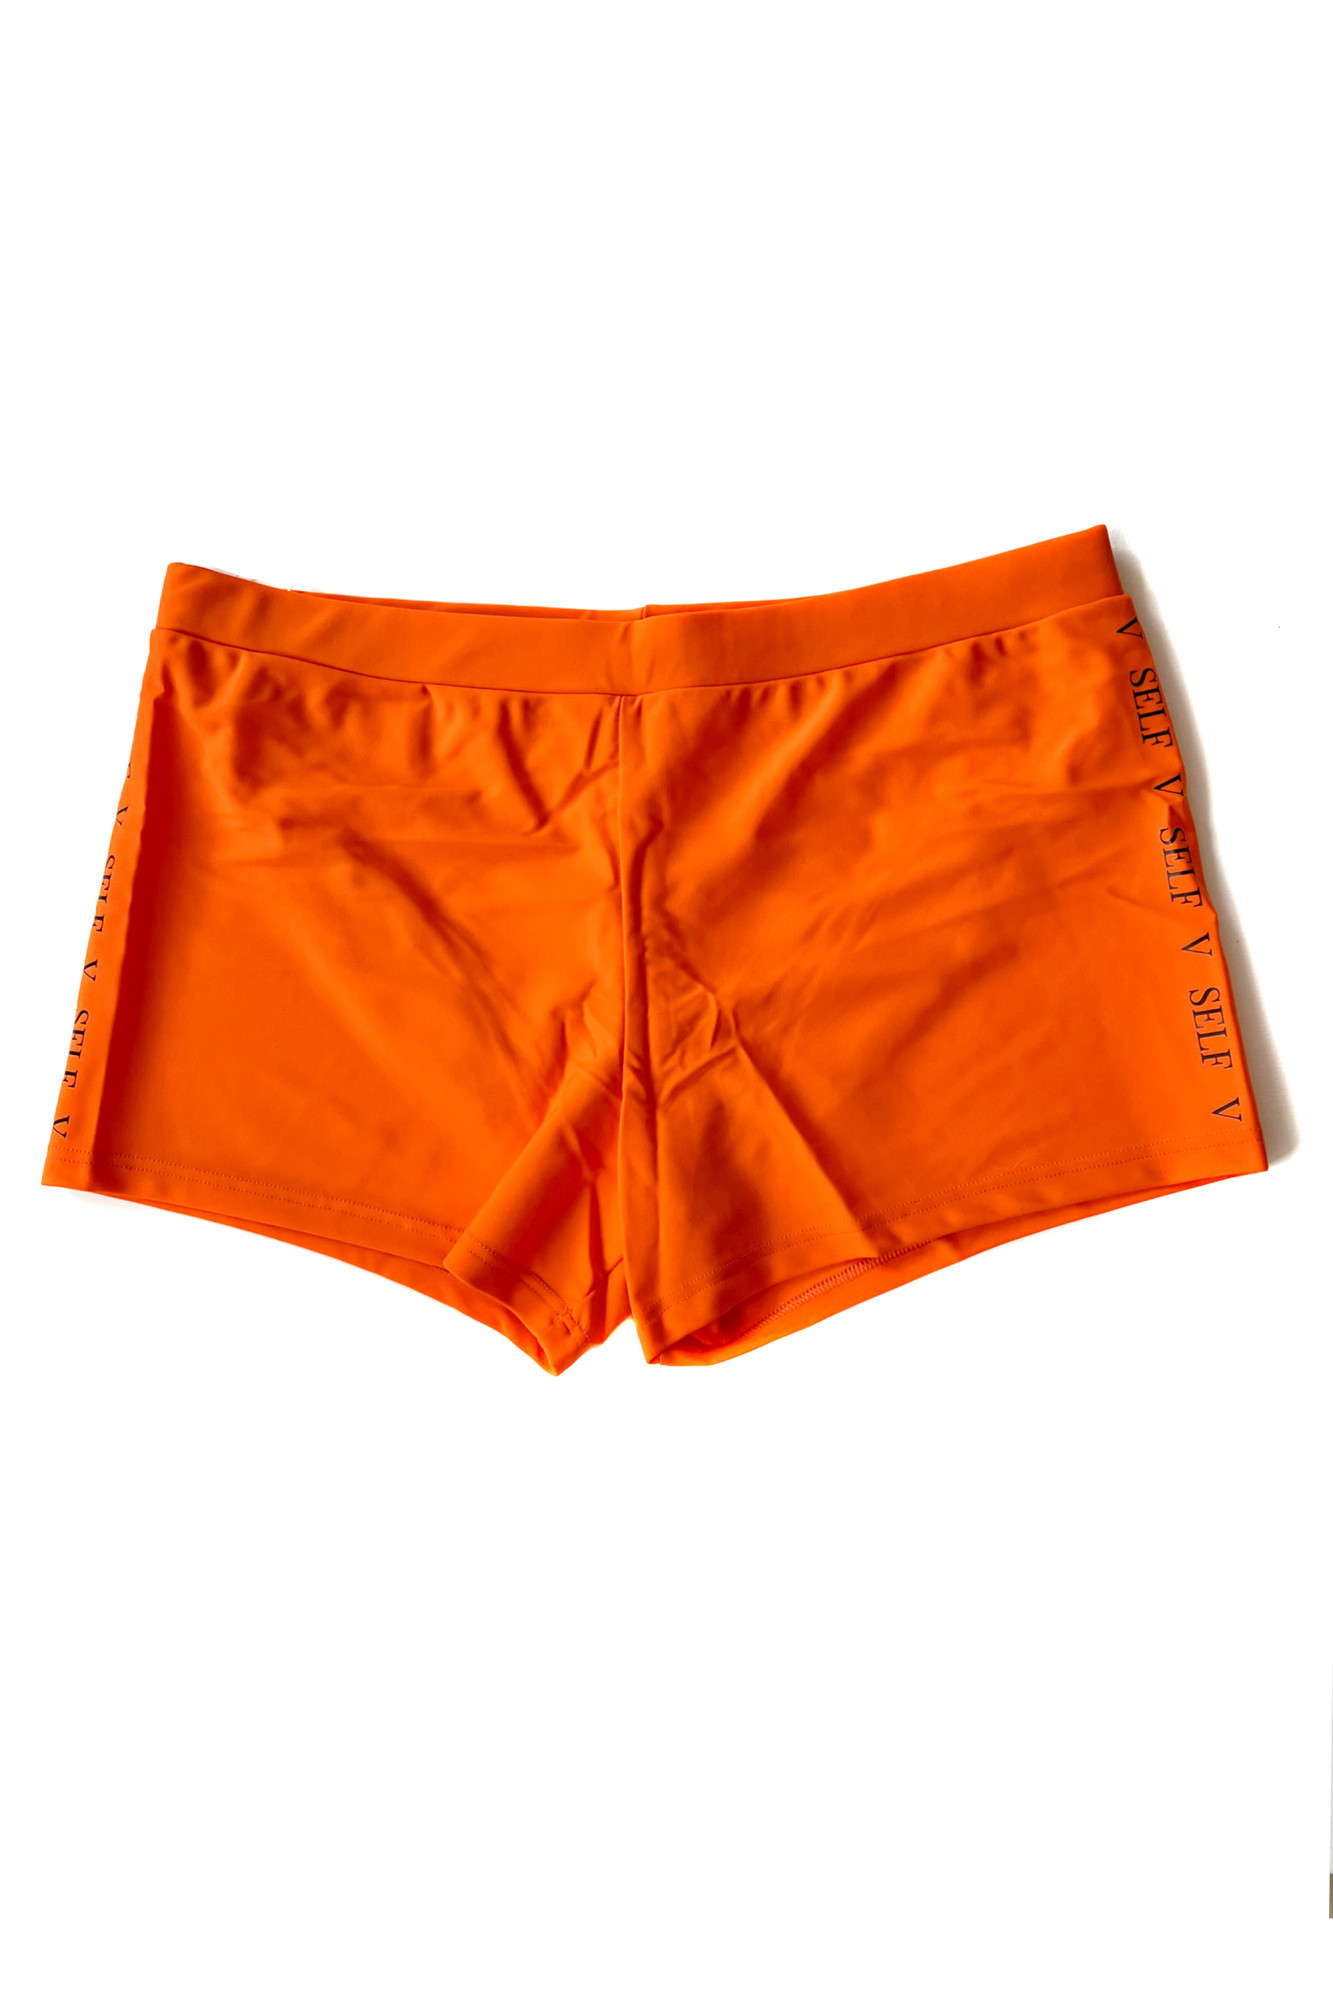 Pánské plavky S96D-5a oranžové - Self XXL